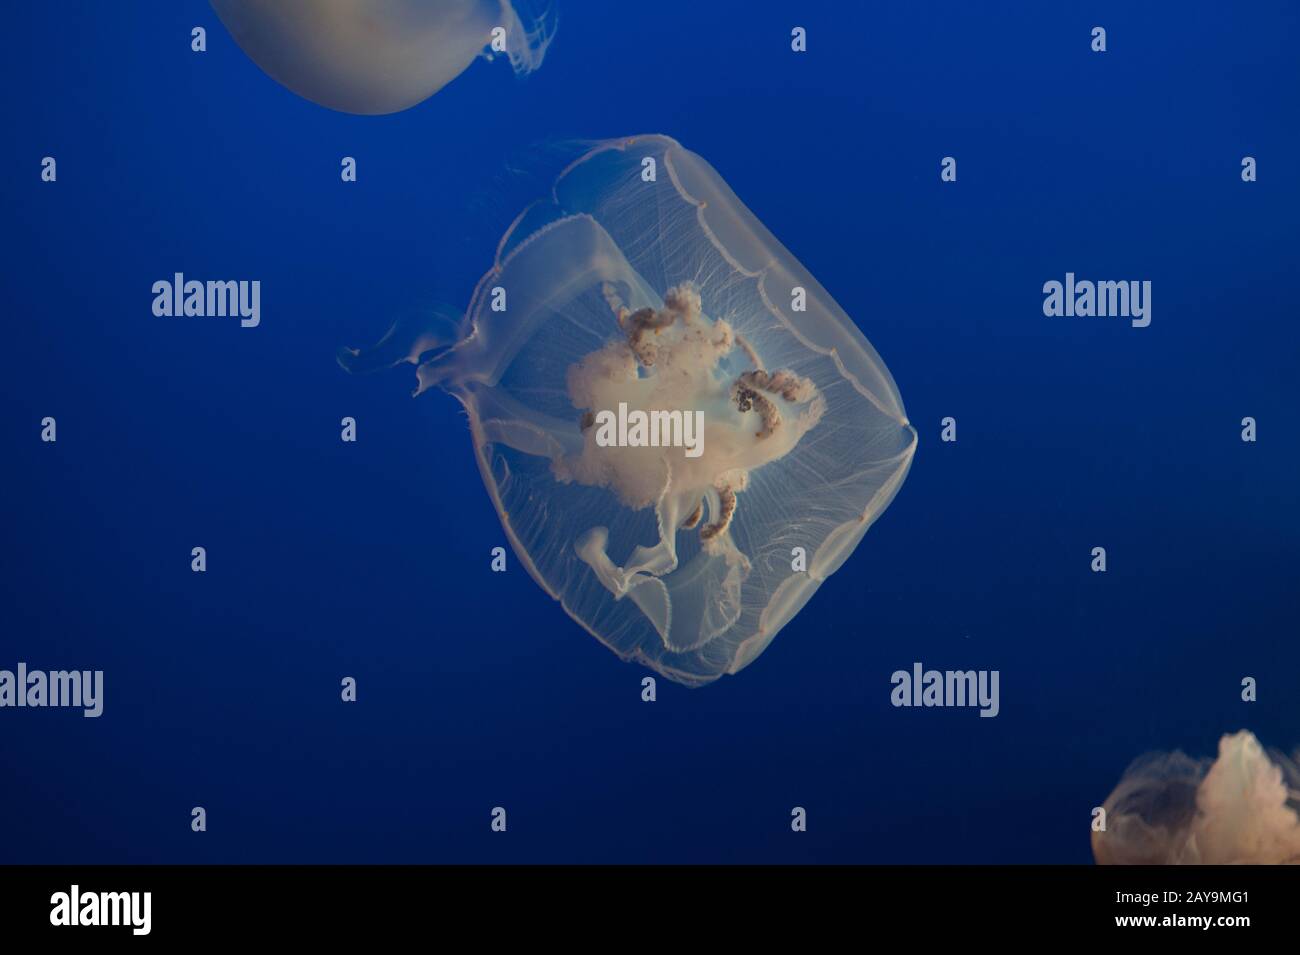 Portrait d'une gelée de lune flottant dans un réservoir à l'aquarium avec du bleu Banque D'Images